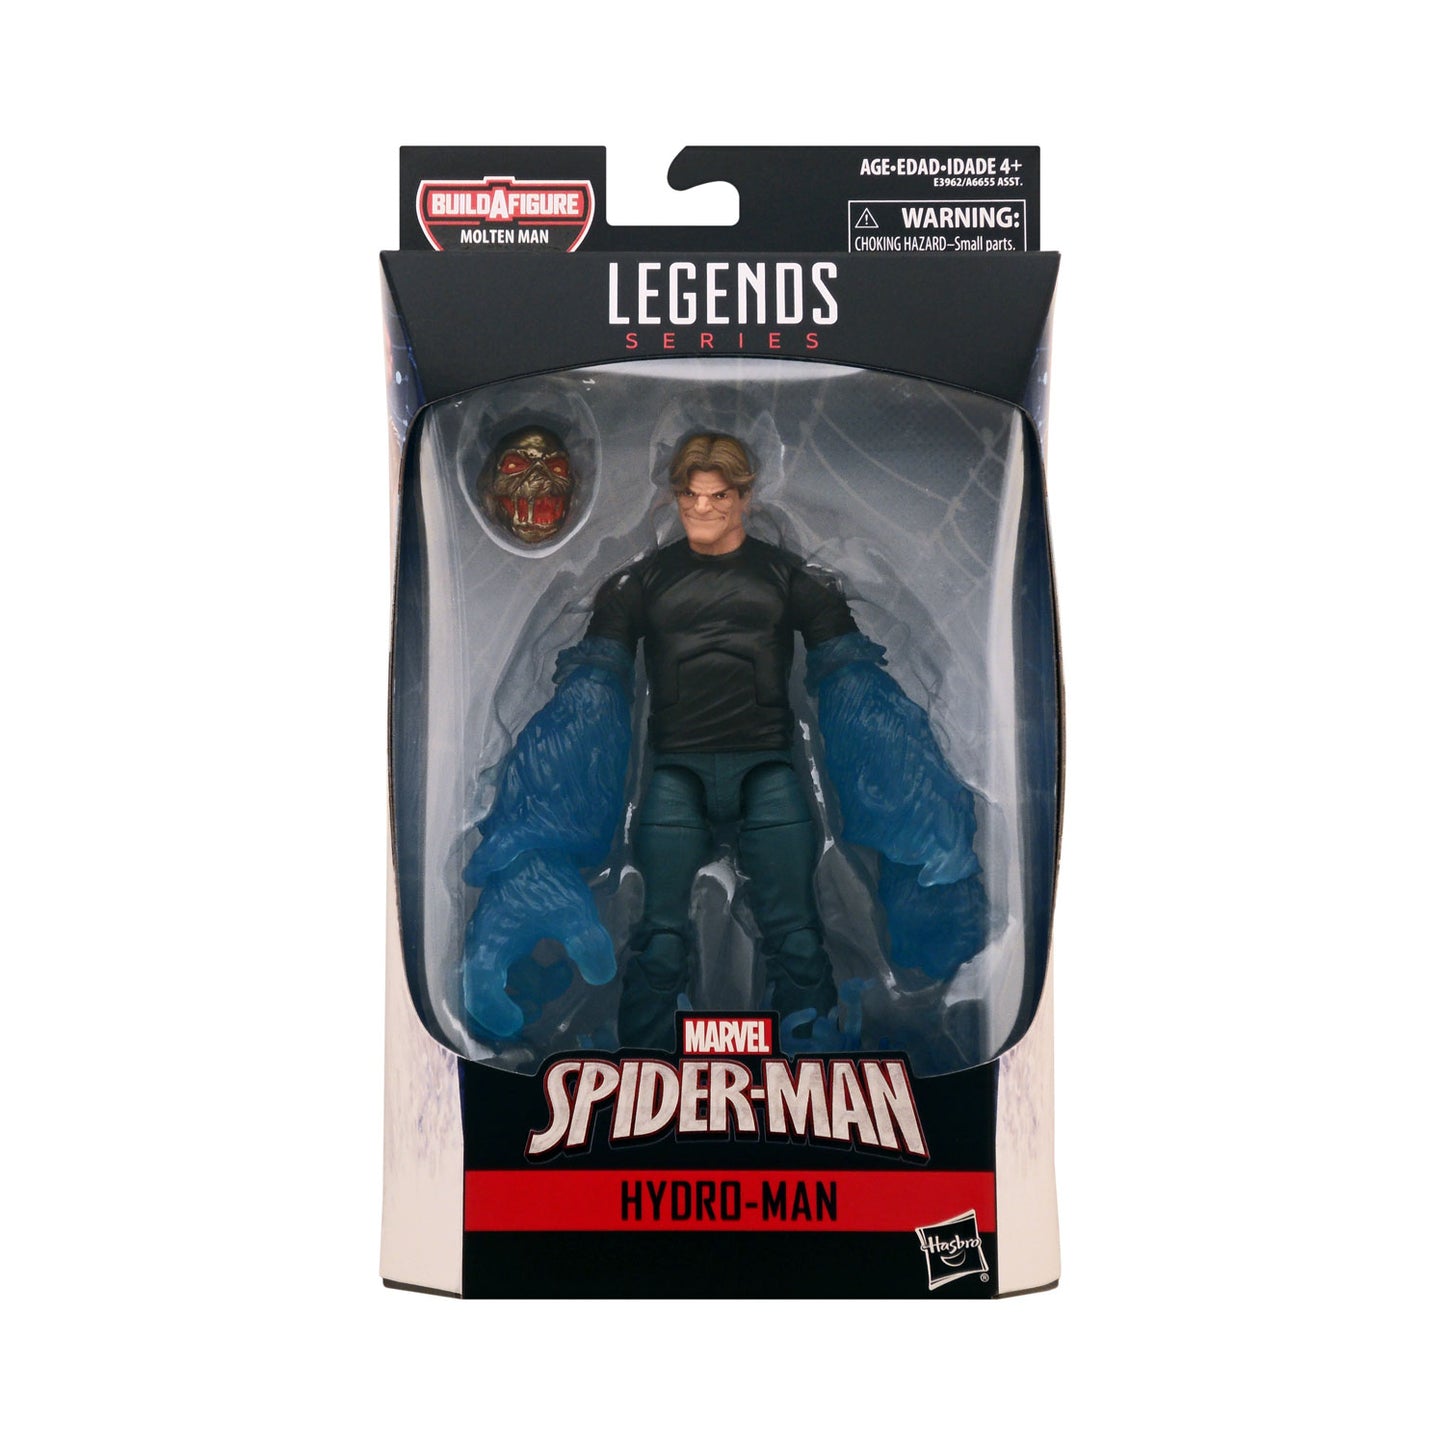 Marvel Legends Molten Man Series Spider-Man 6-Inch Action Figure